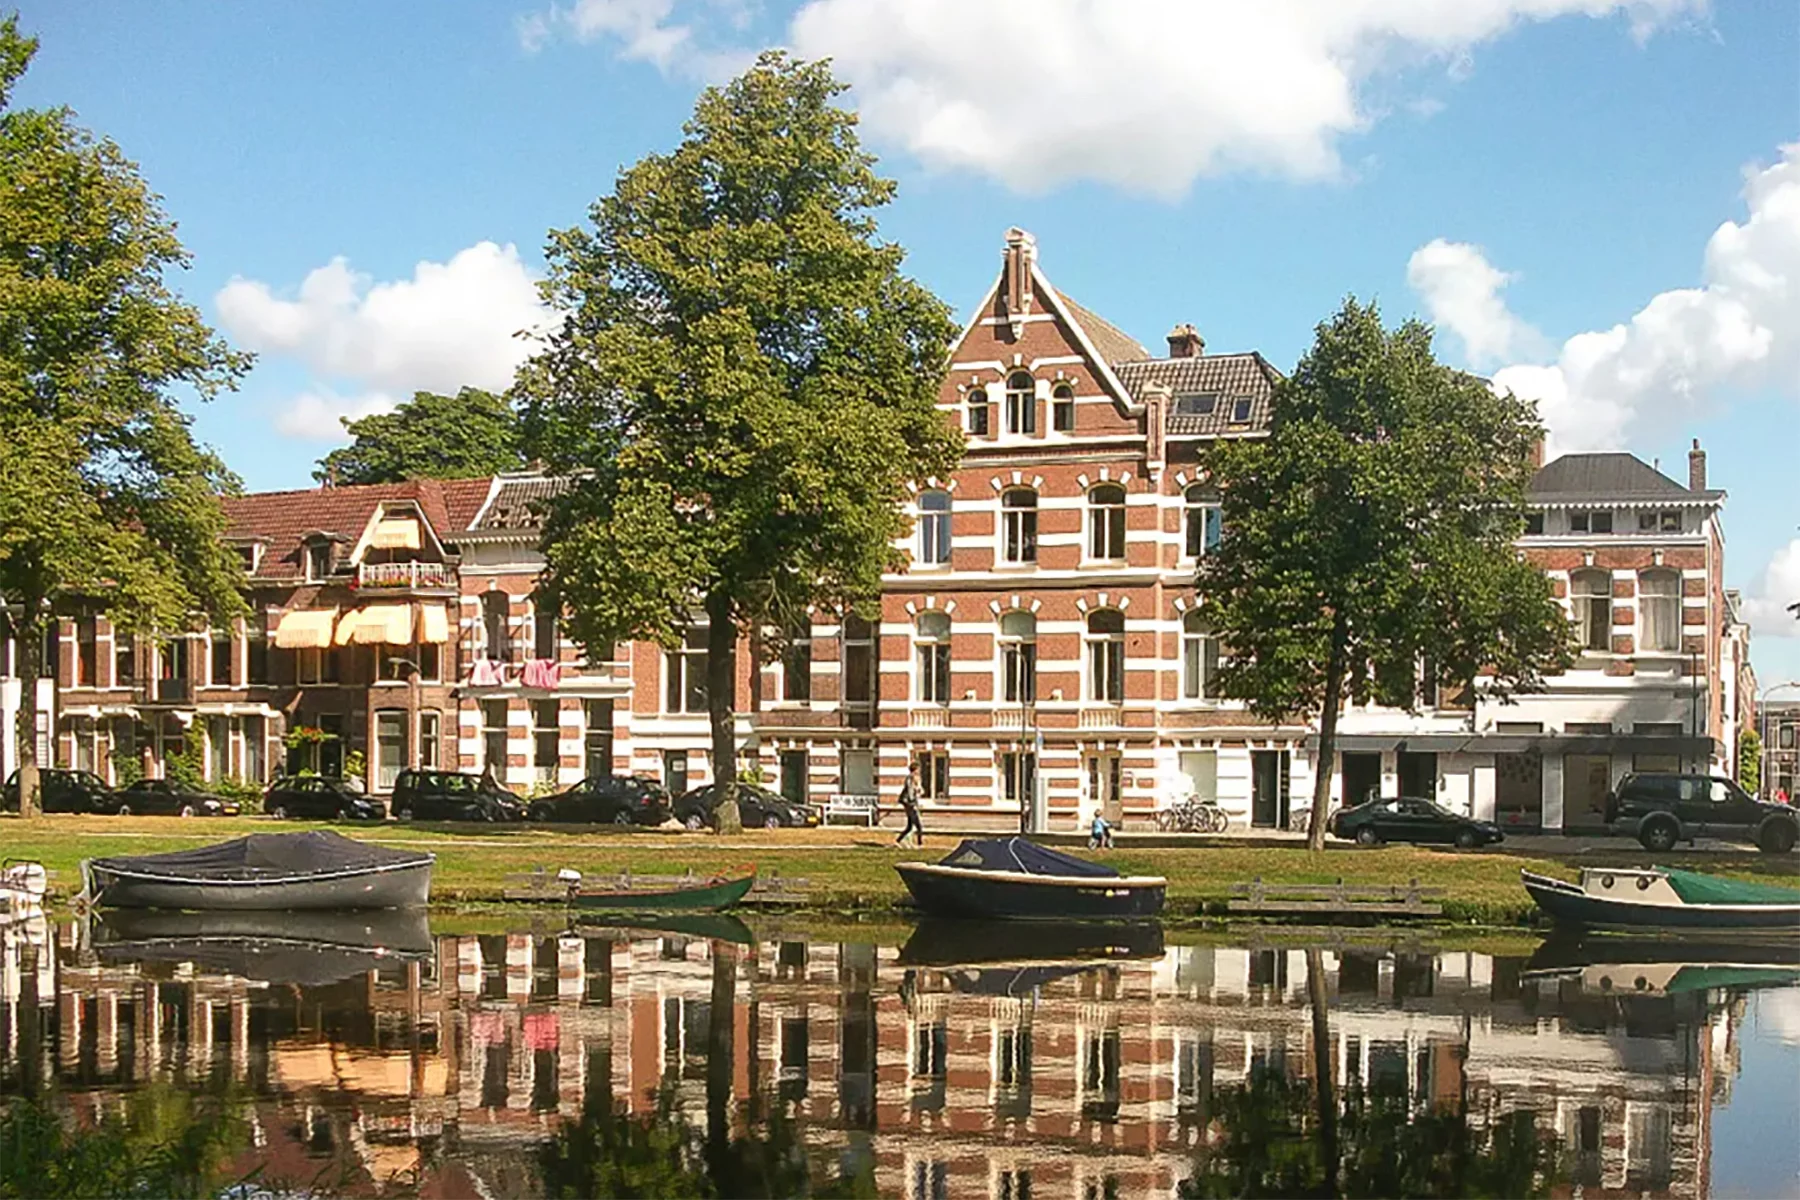 Kleverparkbuurt, Haarlem